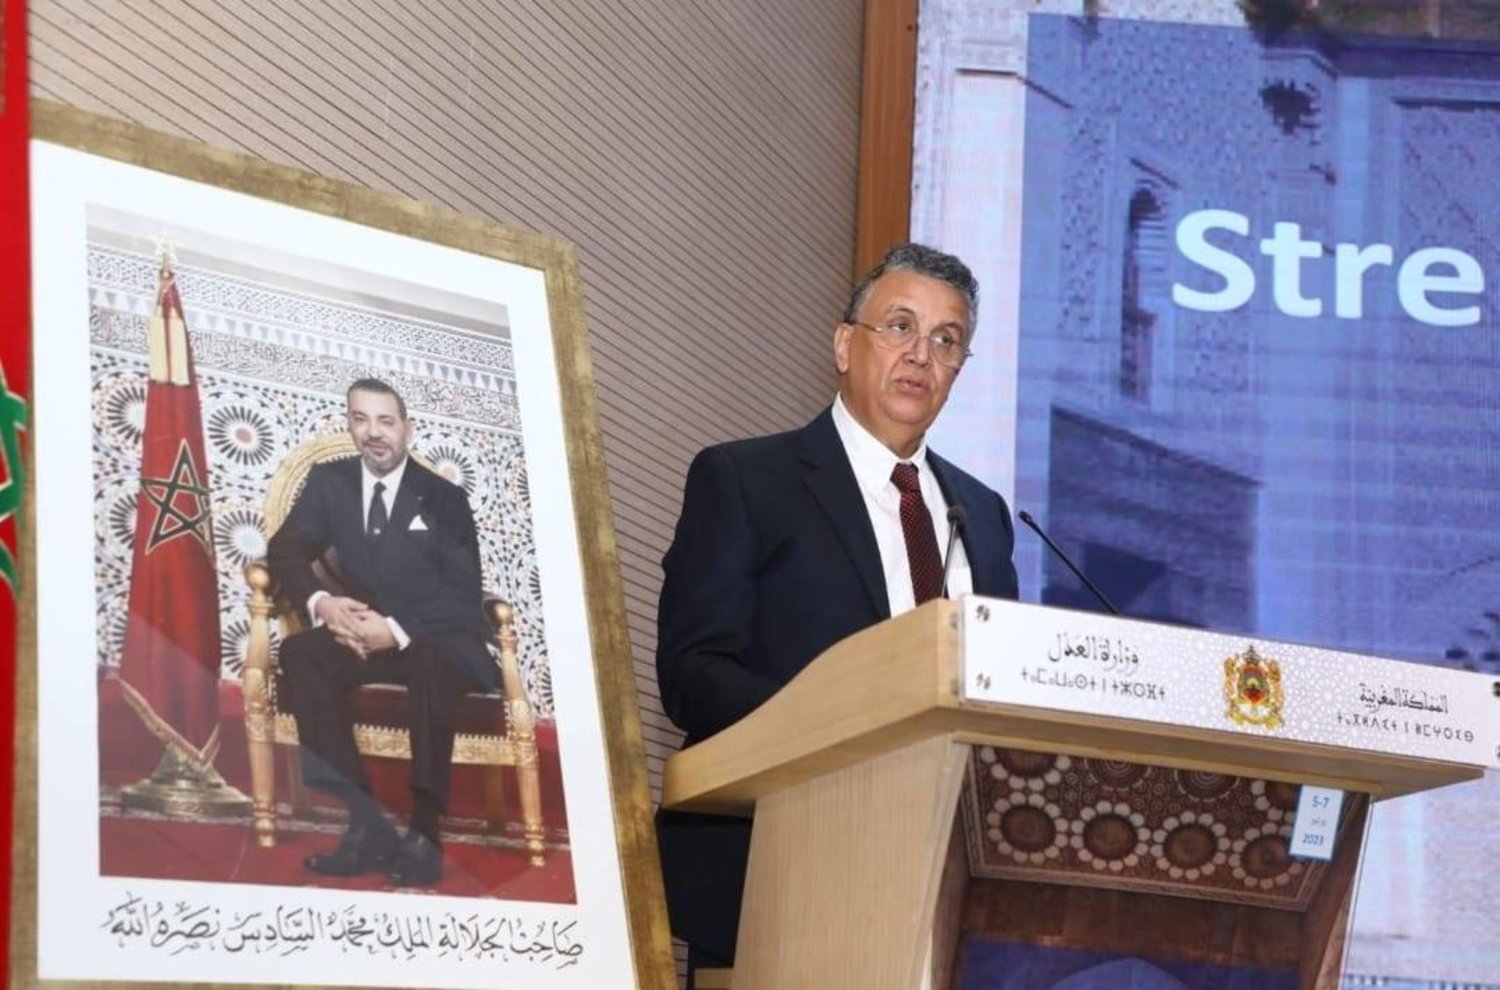 وزير العدل المغربي عبد اللطيف وهبي يلقي كلمته في المؤتمر (الشرق الأوسط)